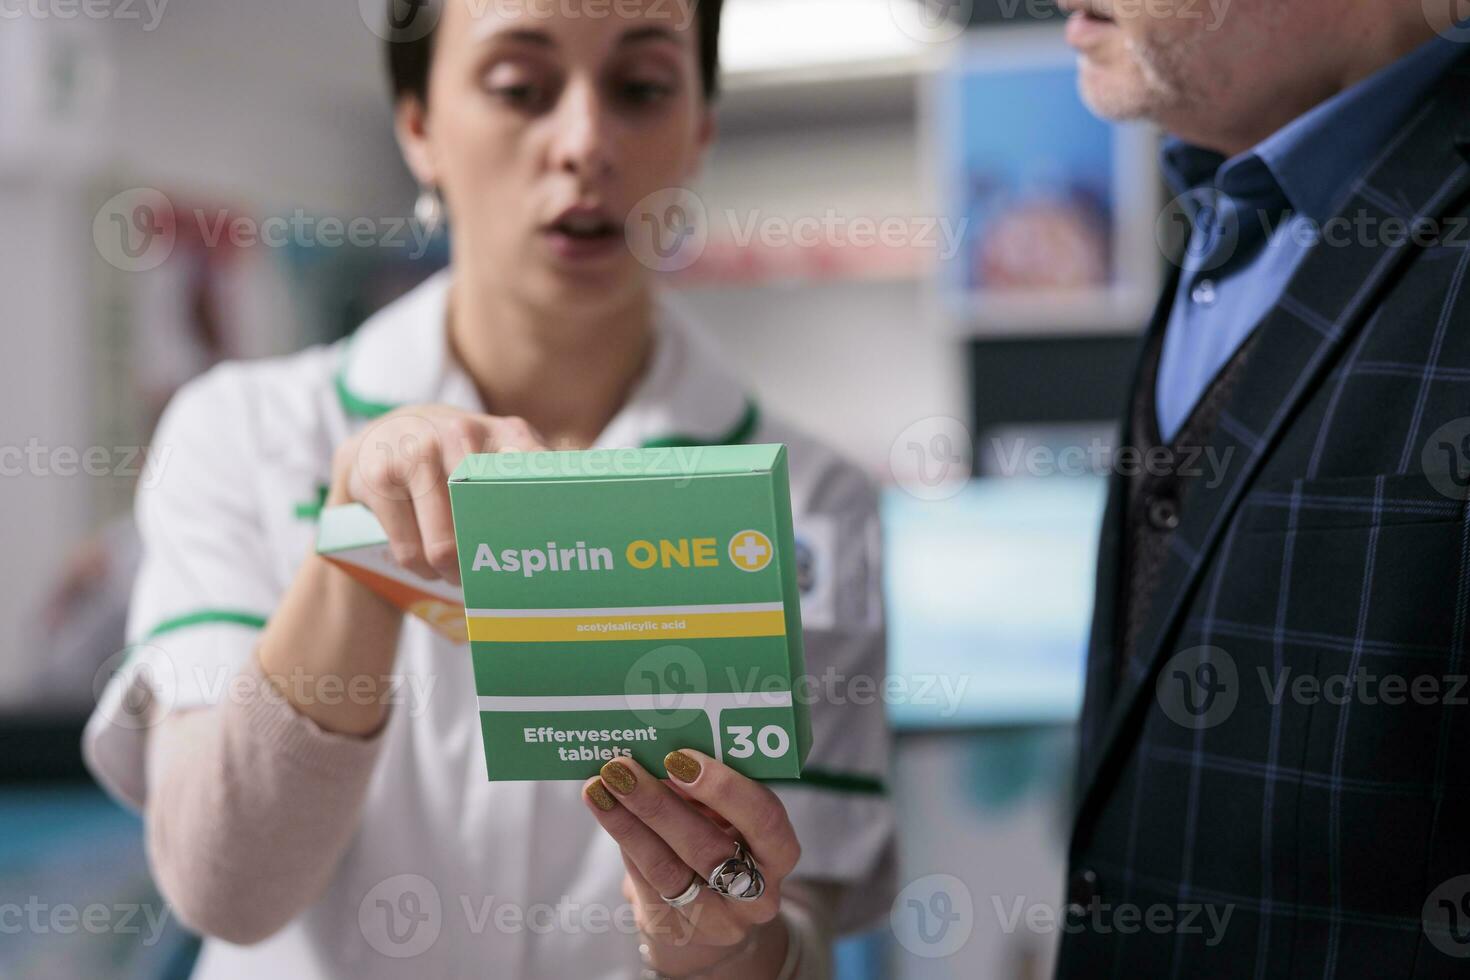 farmaceutisk konsult innehav smärtstillande paket och förklara aspirin dosering instruktion till kund i apotek. apotek anställd rådgivning man piller för inflammation behandling foto